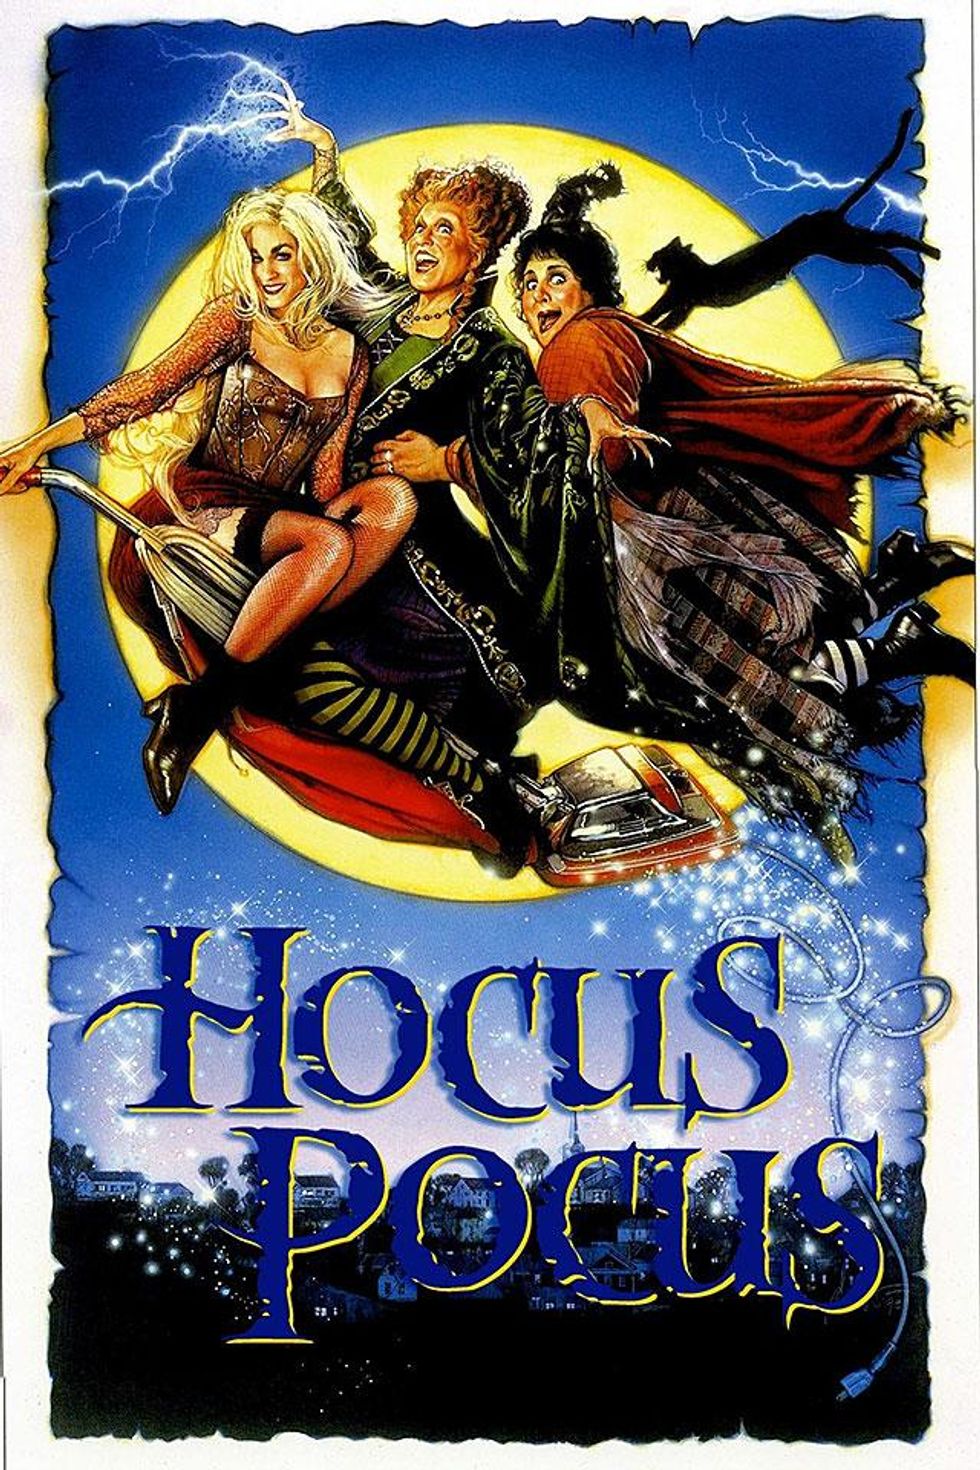 4. Hocus Pocus